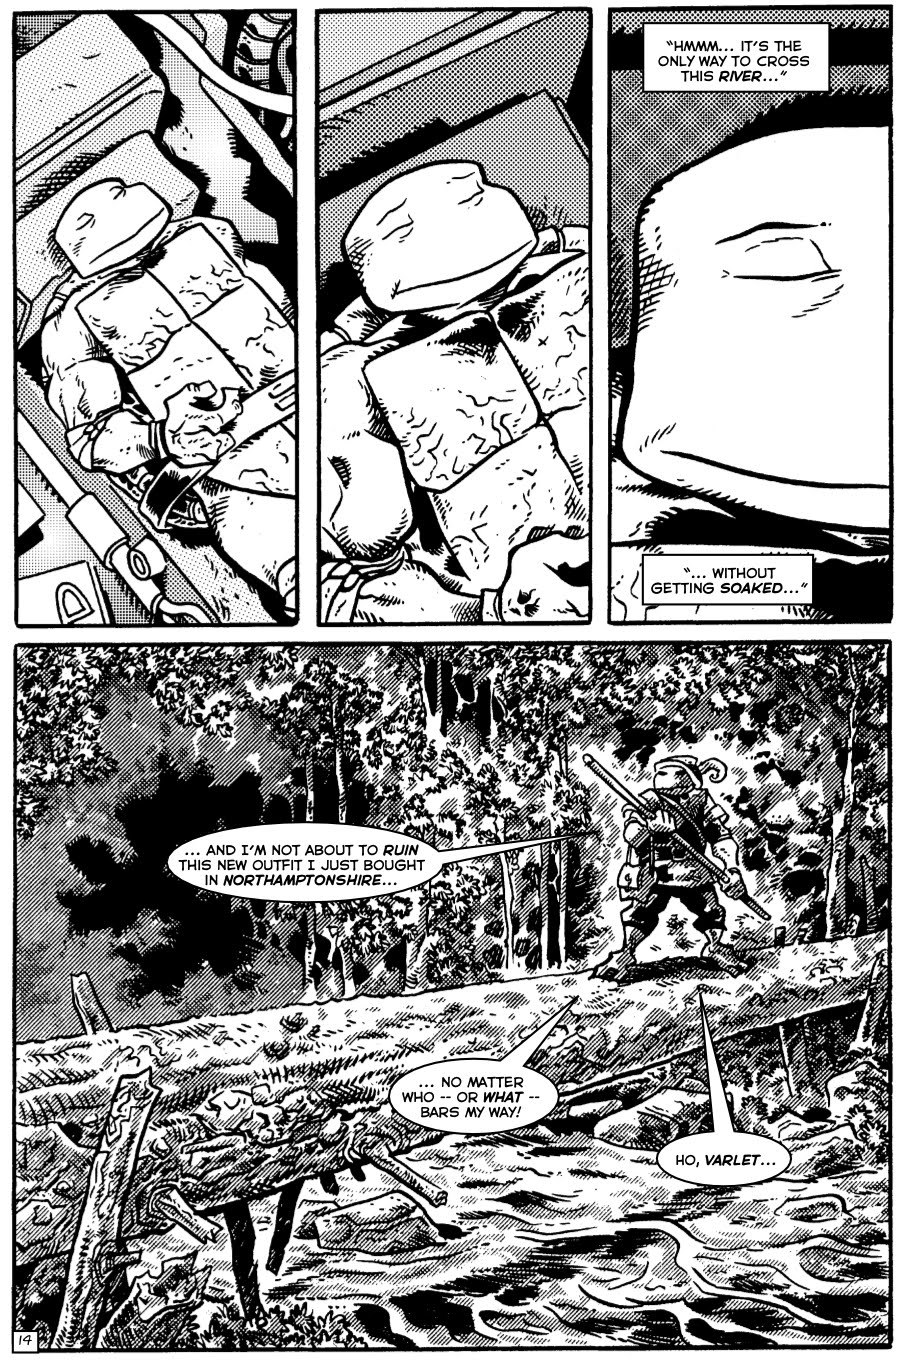 TMNT: Teenage Mutant Ninja Turtles issue 31 - Page 14